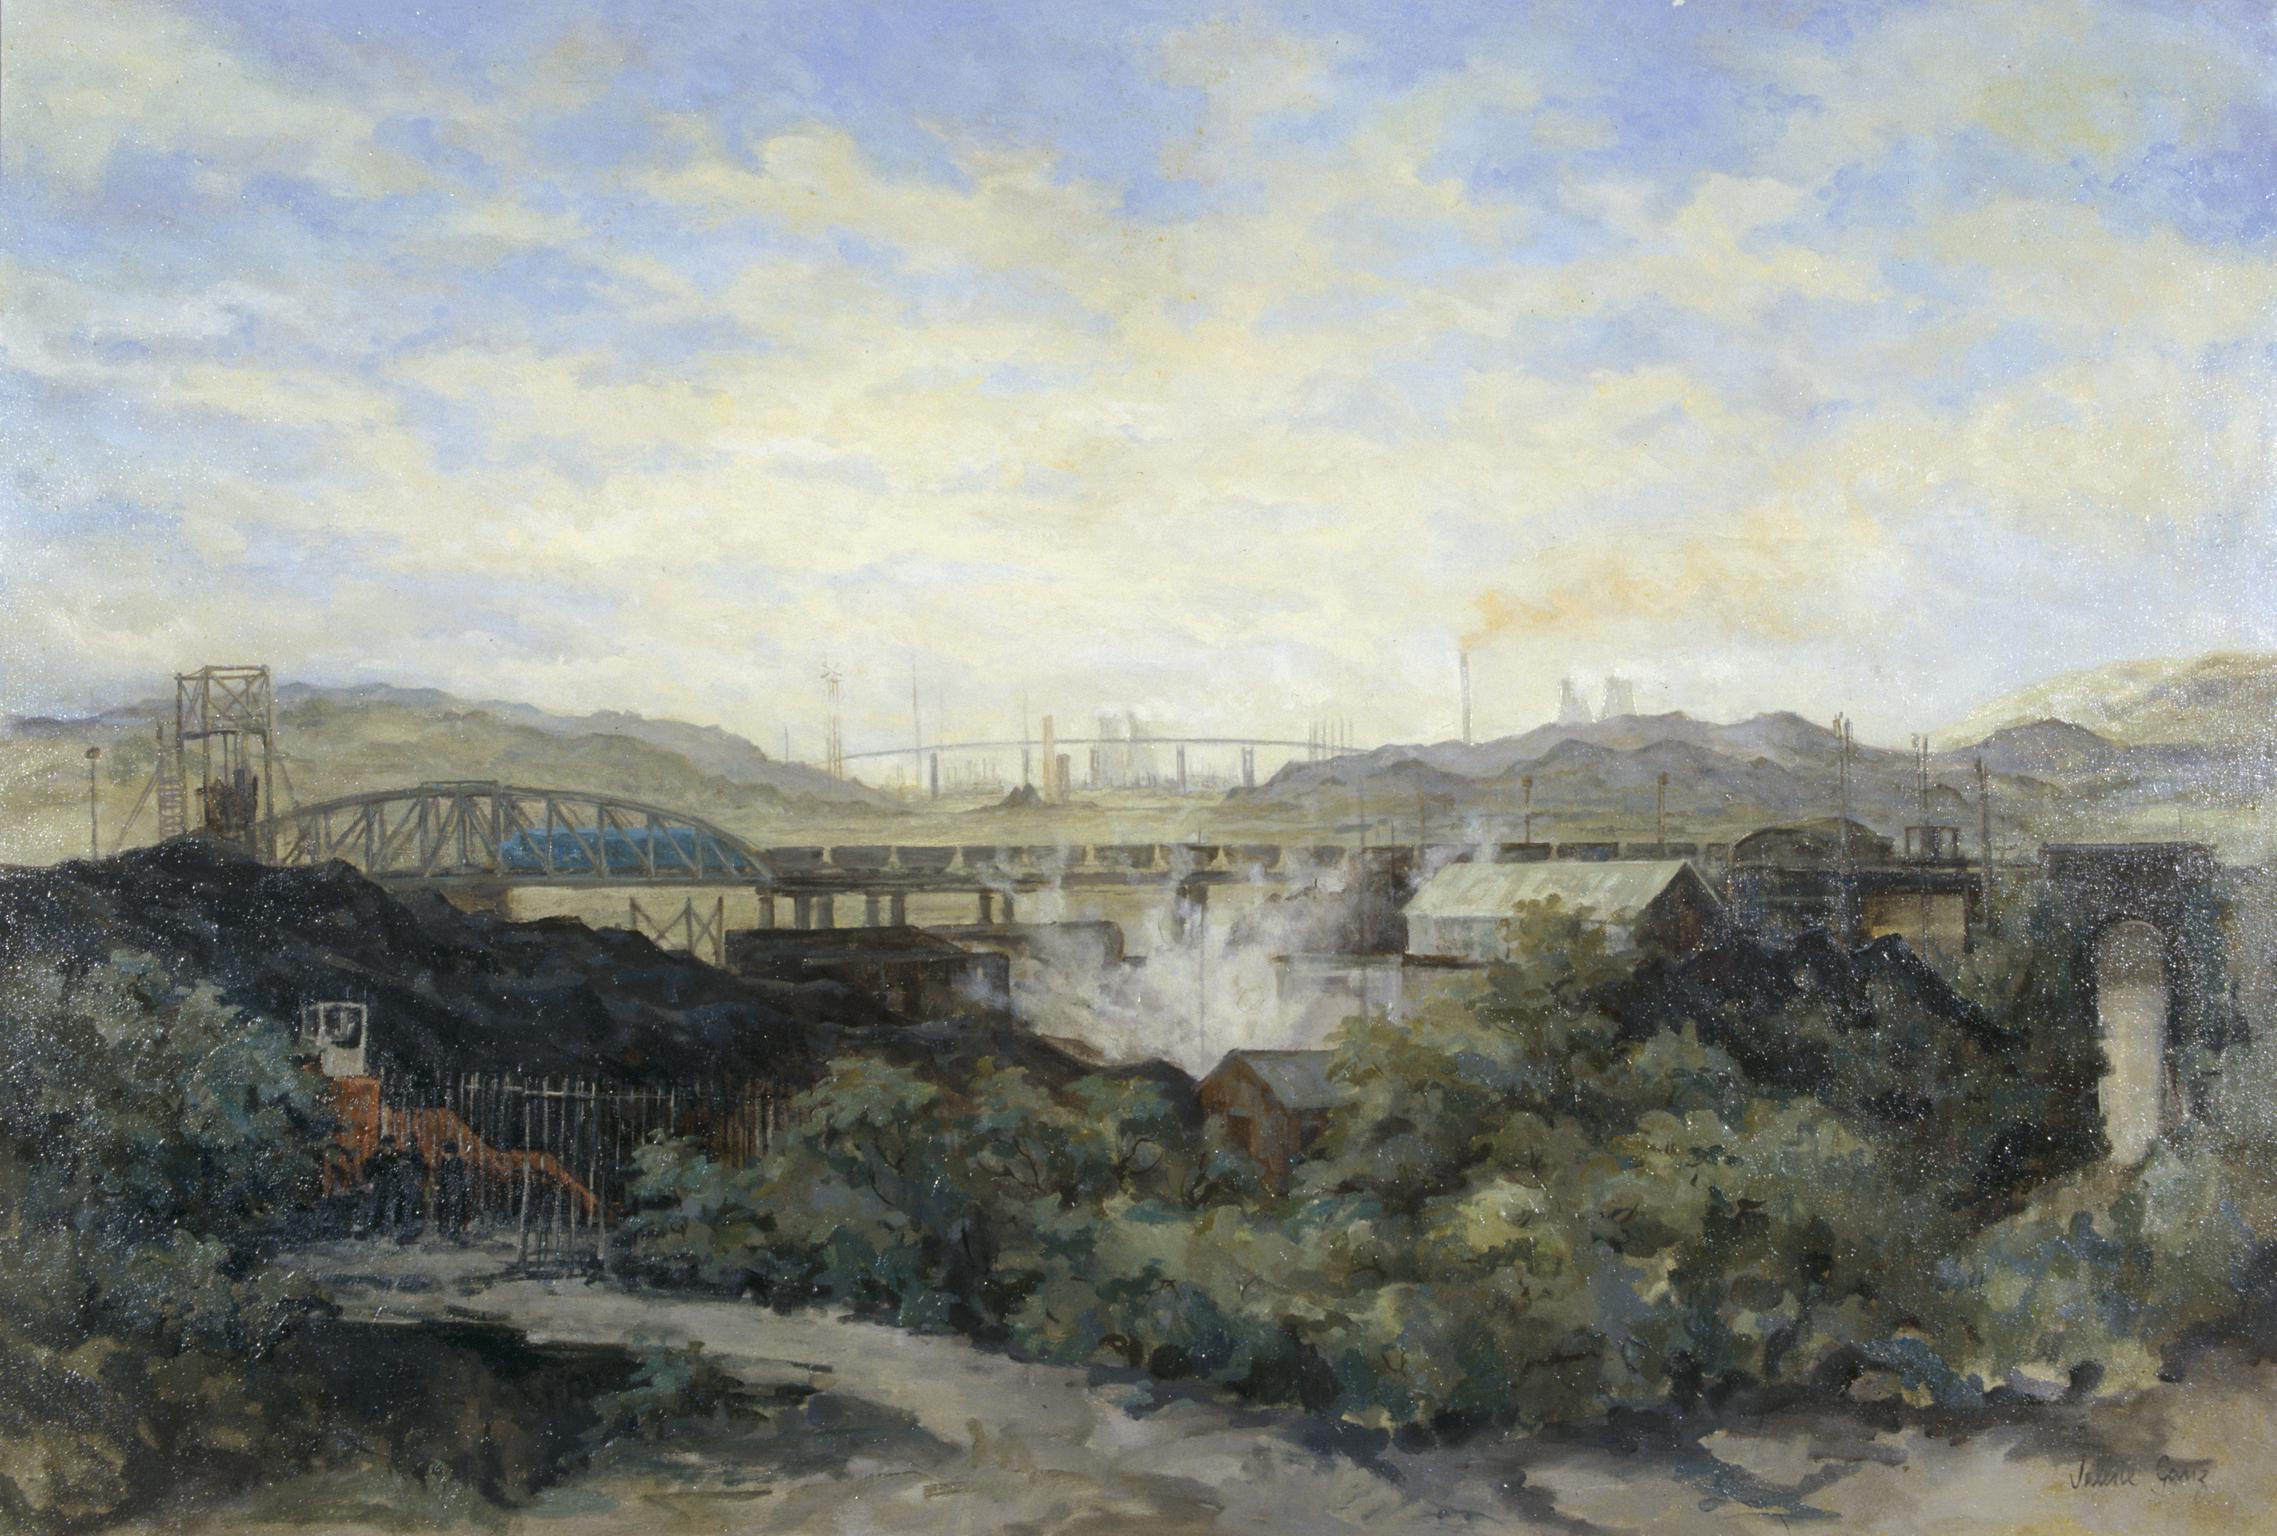 Baglan Bay Depot - The Swing Bridge (painting)